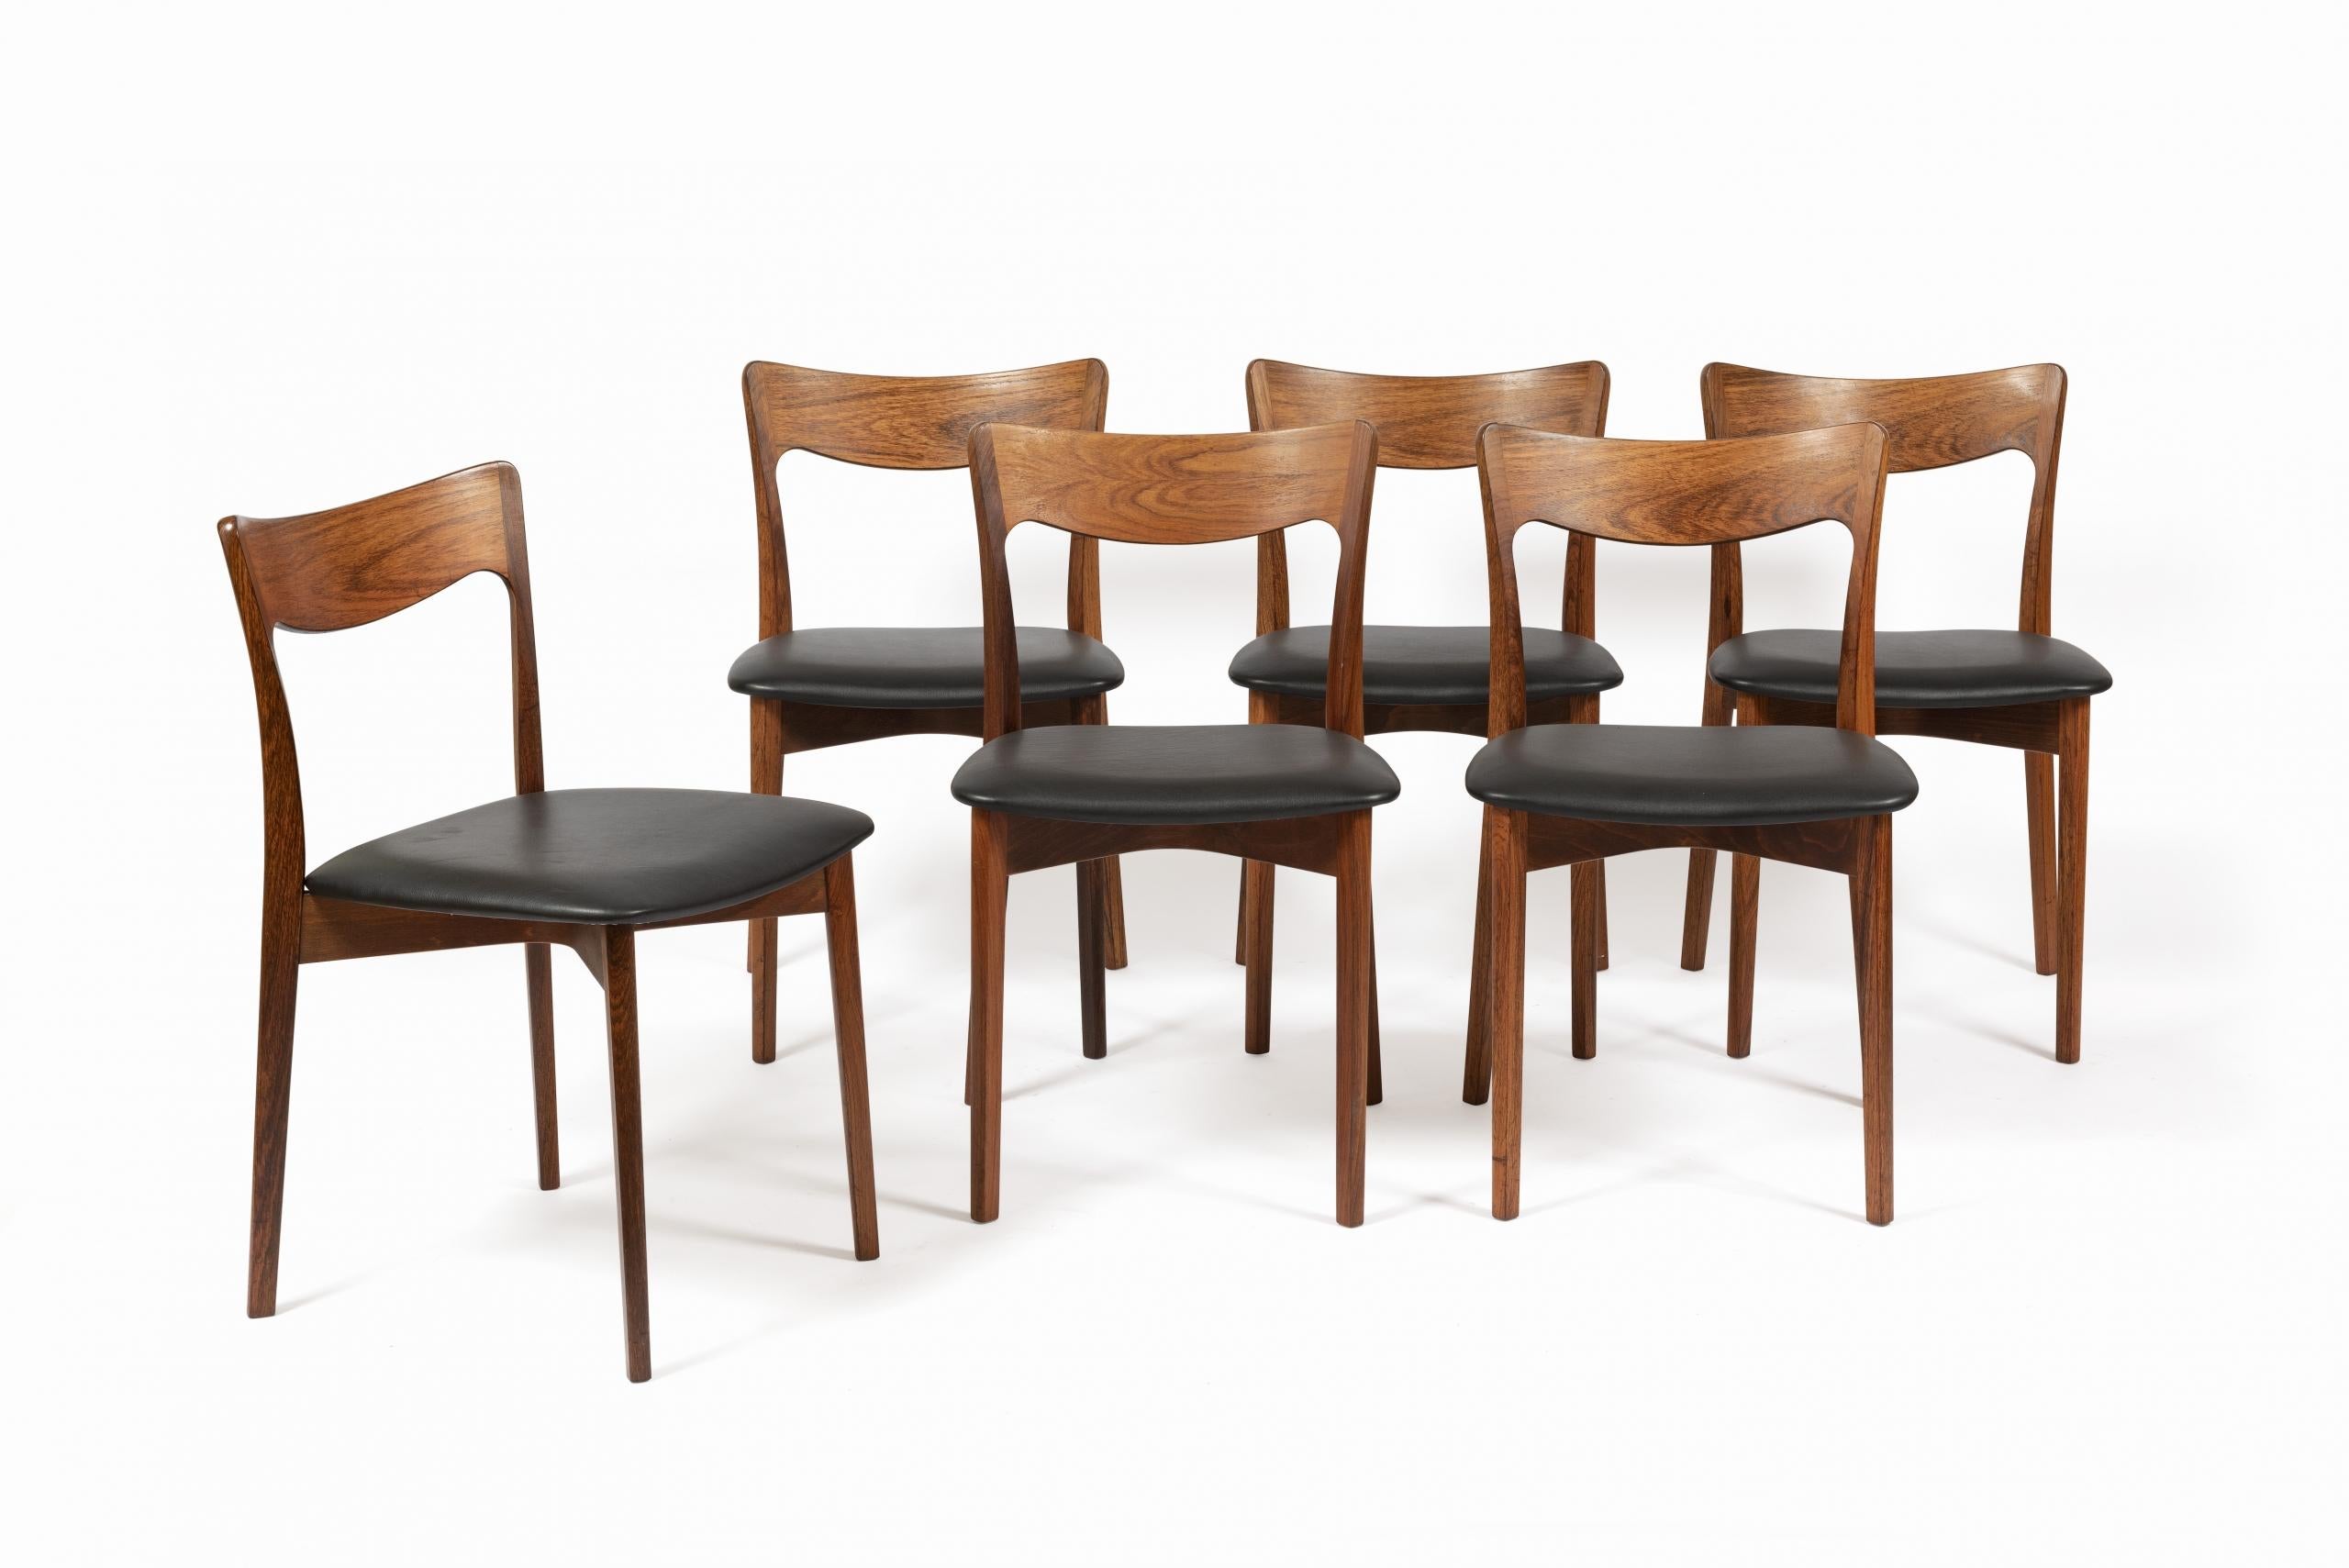 Ensemble de six chaises de salle à manger danoises par Harry Østergaard pour Randers Møbelfabrik, 1950.

Chaises avec des dossiers et assises incurvés, de fins pieds ronds, coniques en palissandre.

Les éléments en palissandre ont été nettoyés